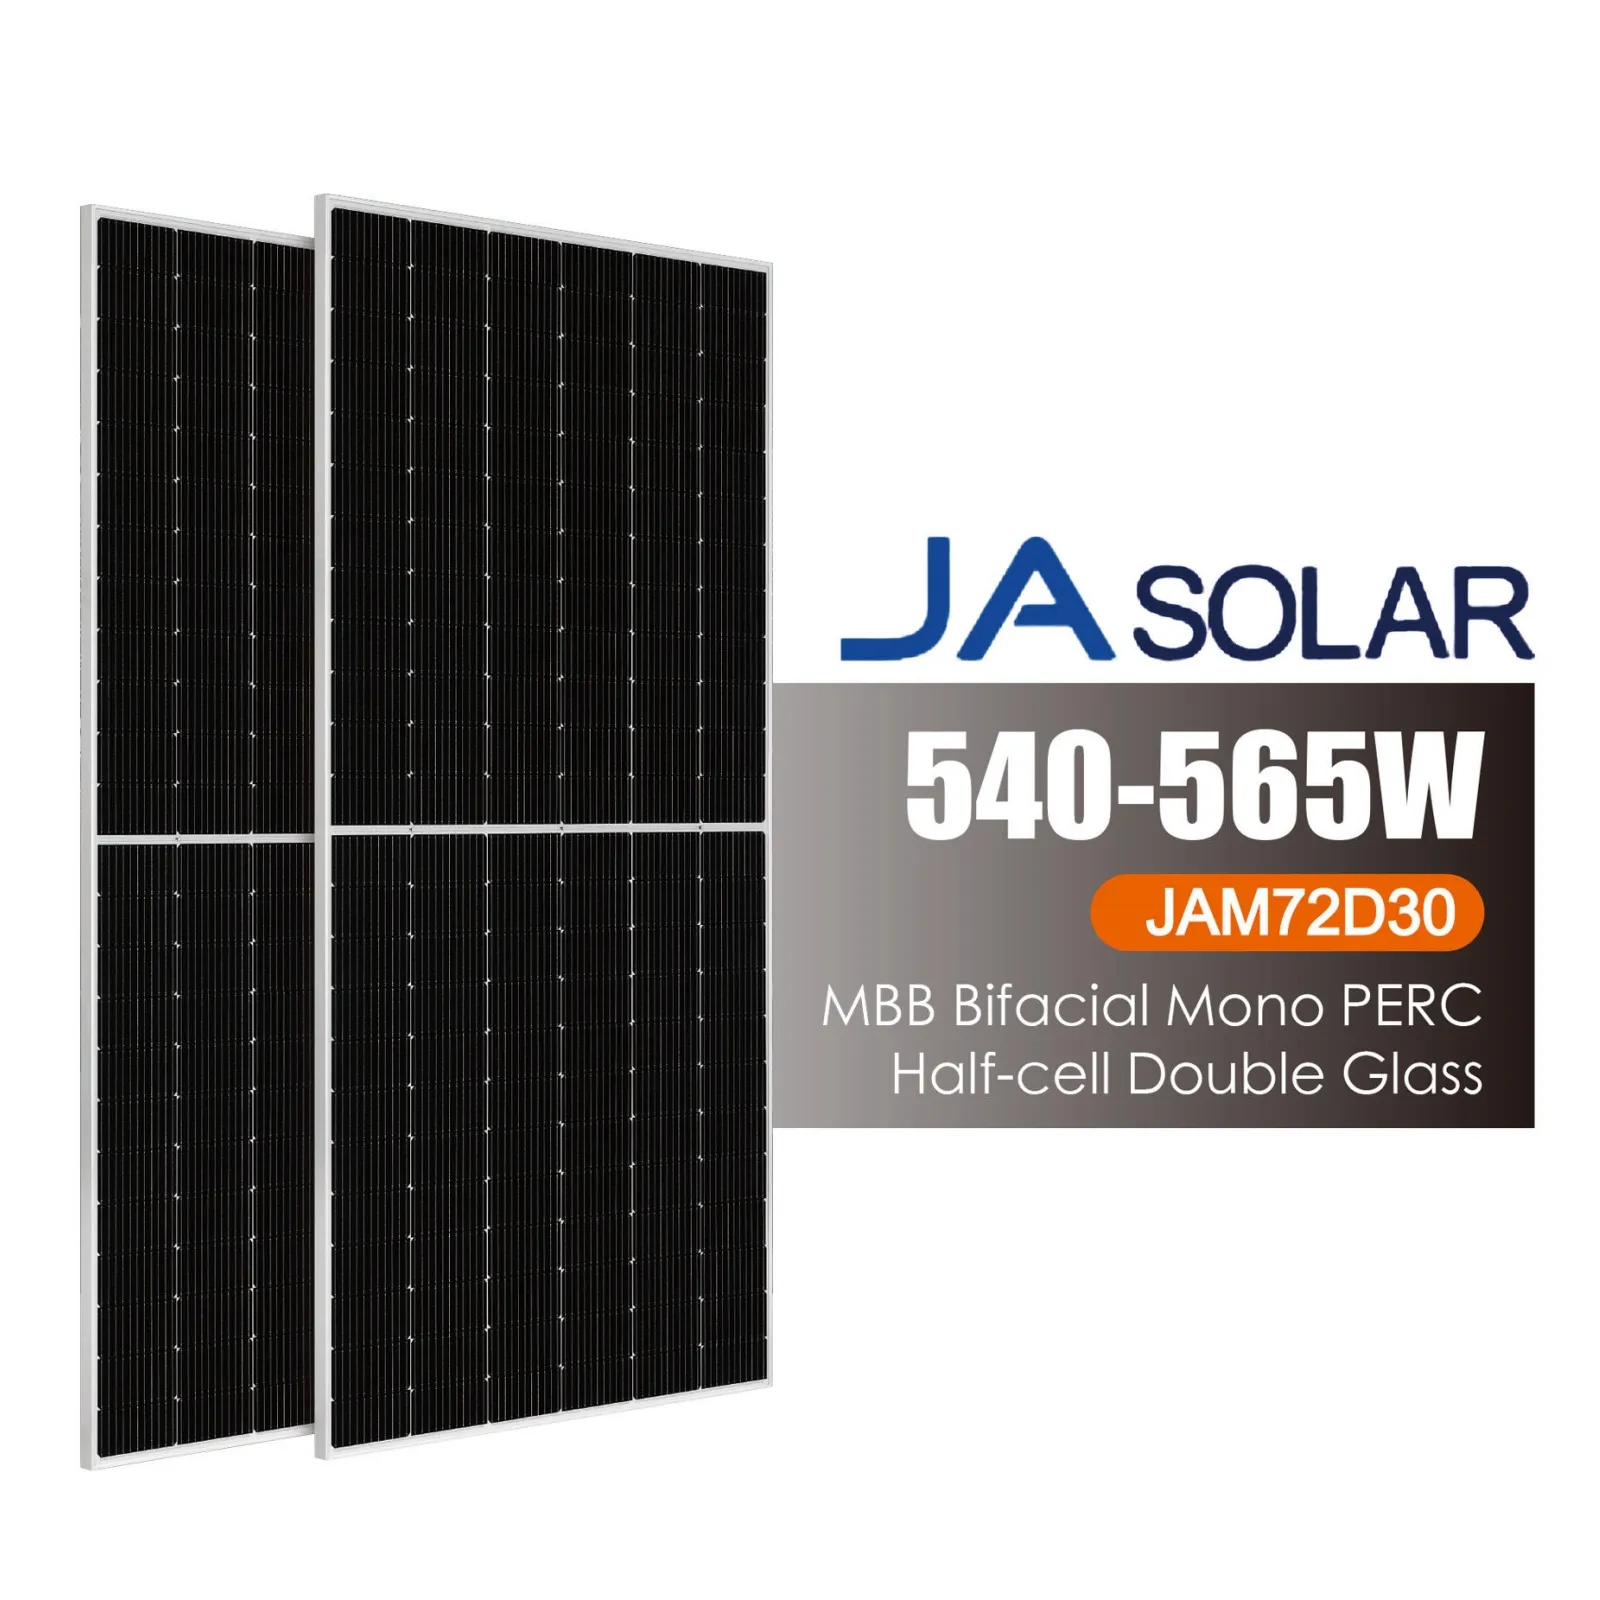 뜨거운 판매 JA 태양 전지 패널 JAM72D30 540-565W 재고 반 셀 9BB 태양 전지 패널 가격 PV 모듈 시스템